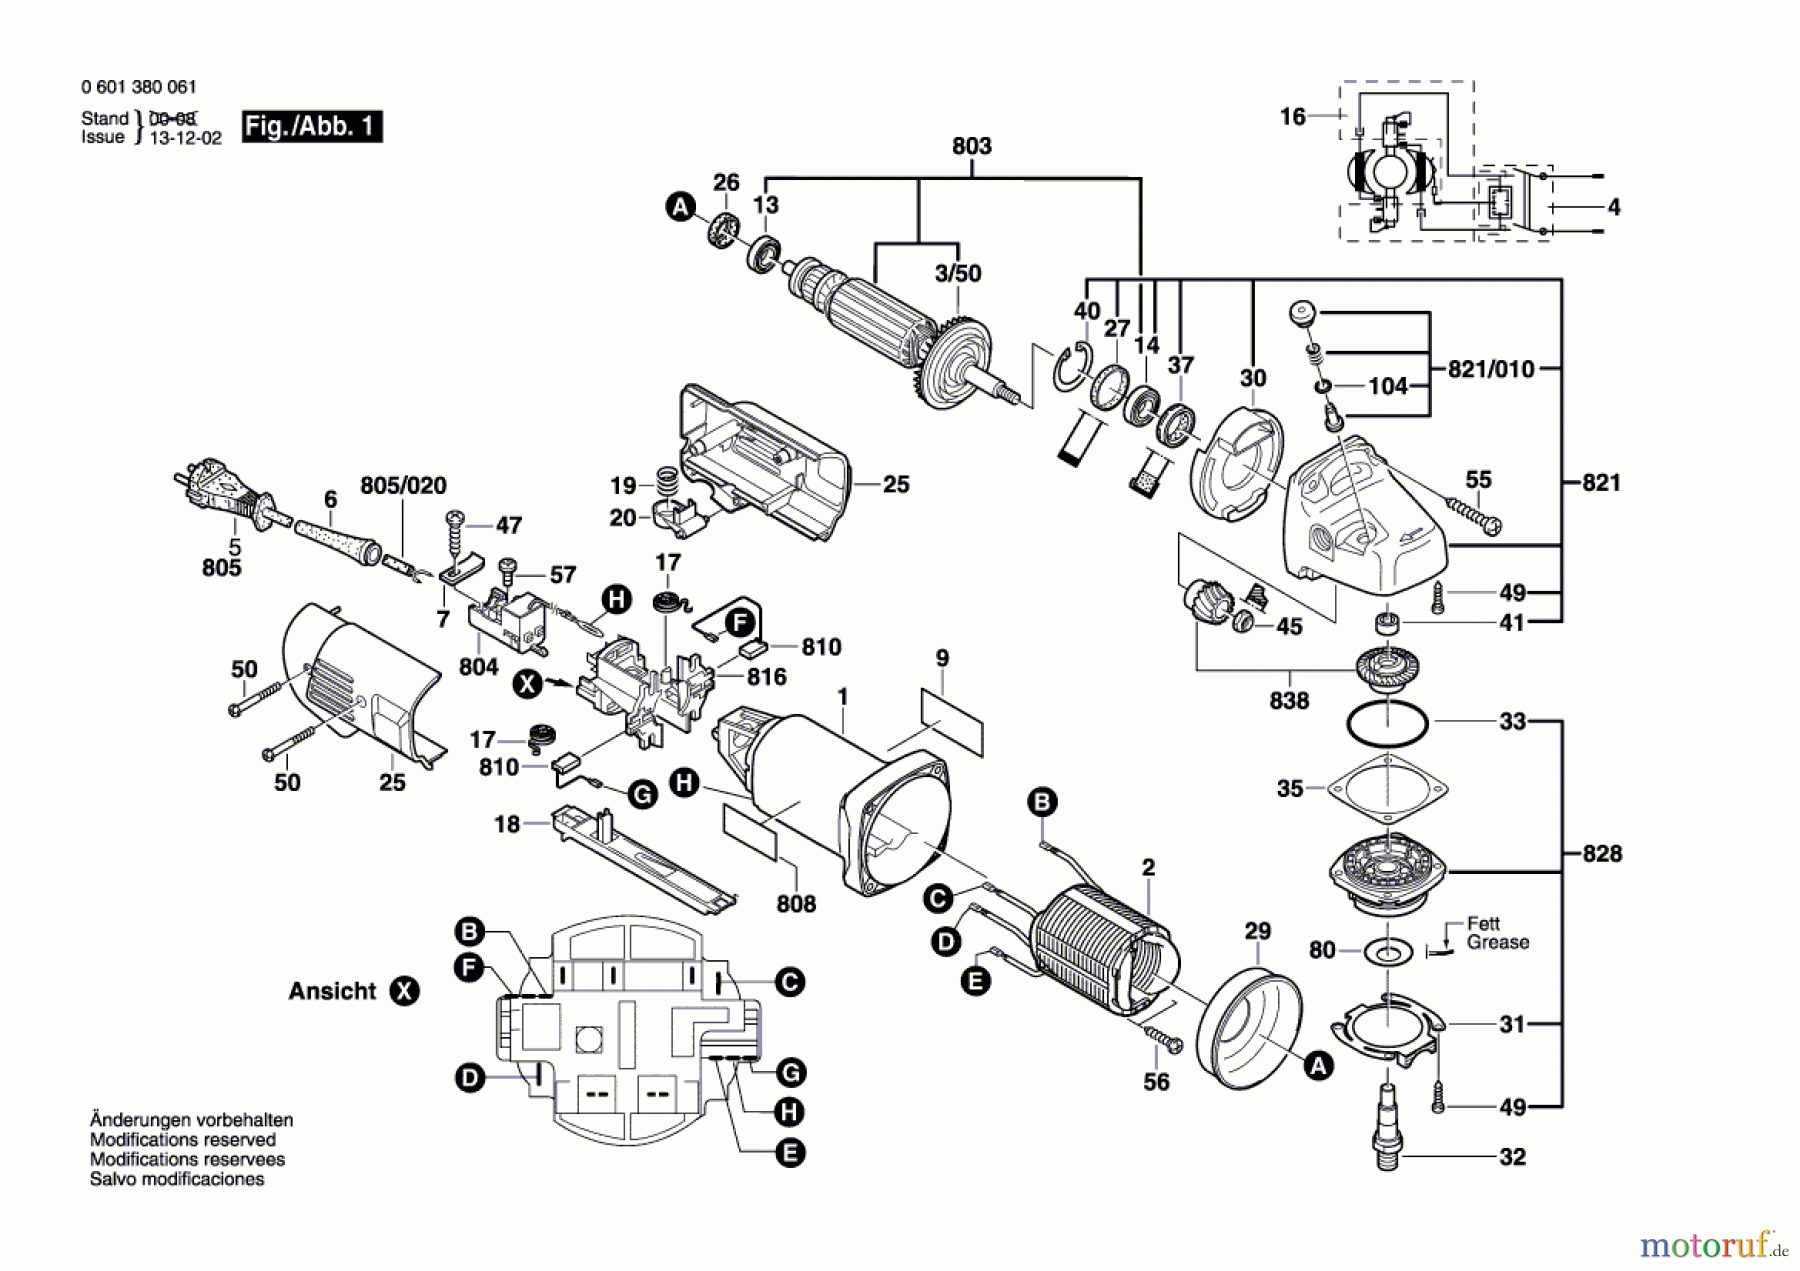  Bosch Werkzeug Winkelschleifer BWS 7-115 Seite 1